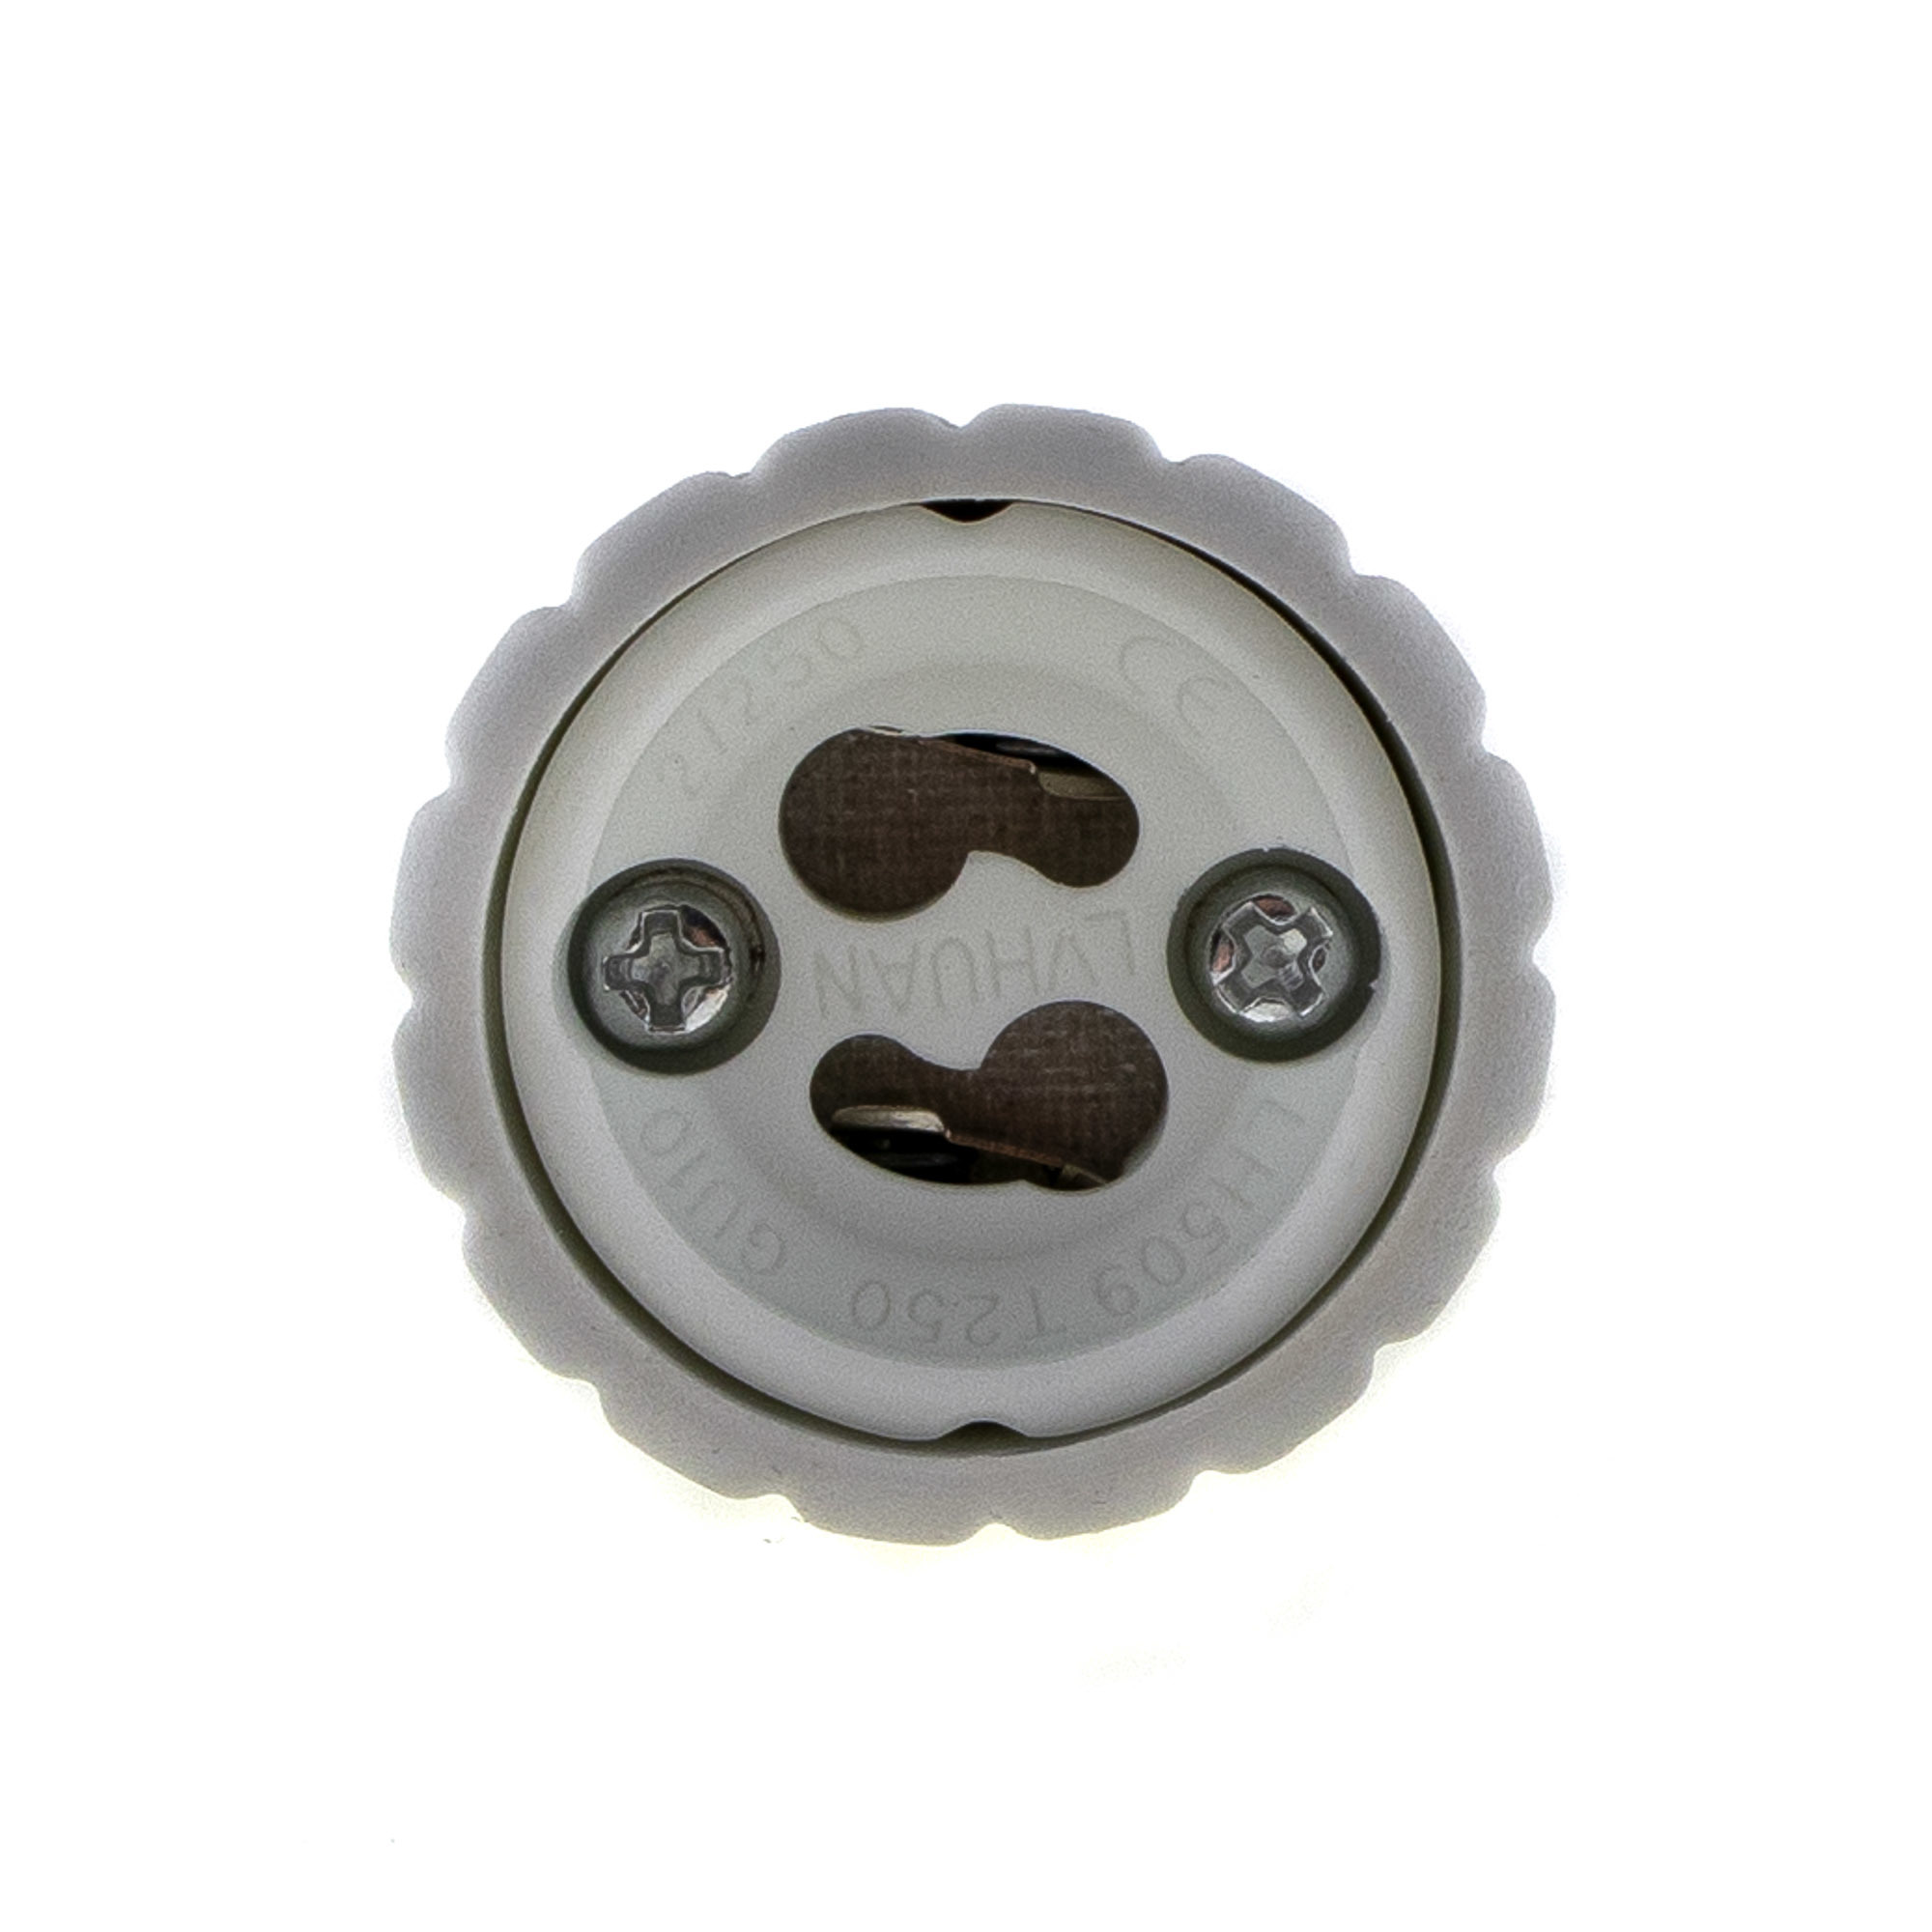 Lamp socket adaptor E14 to GU10 - 4PCS